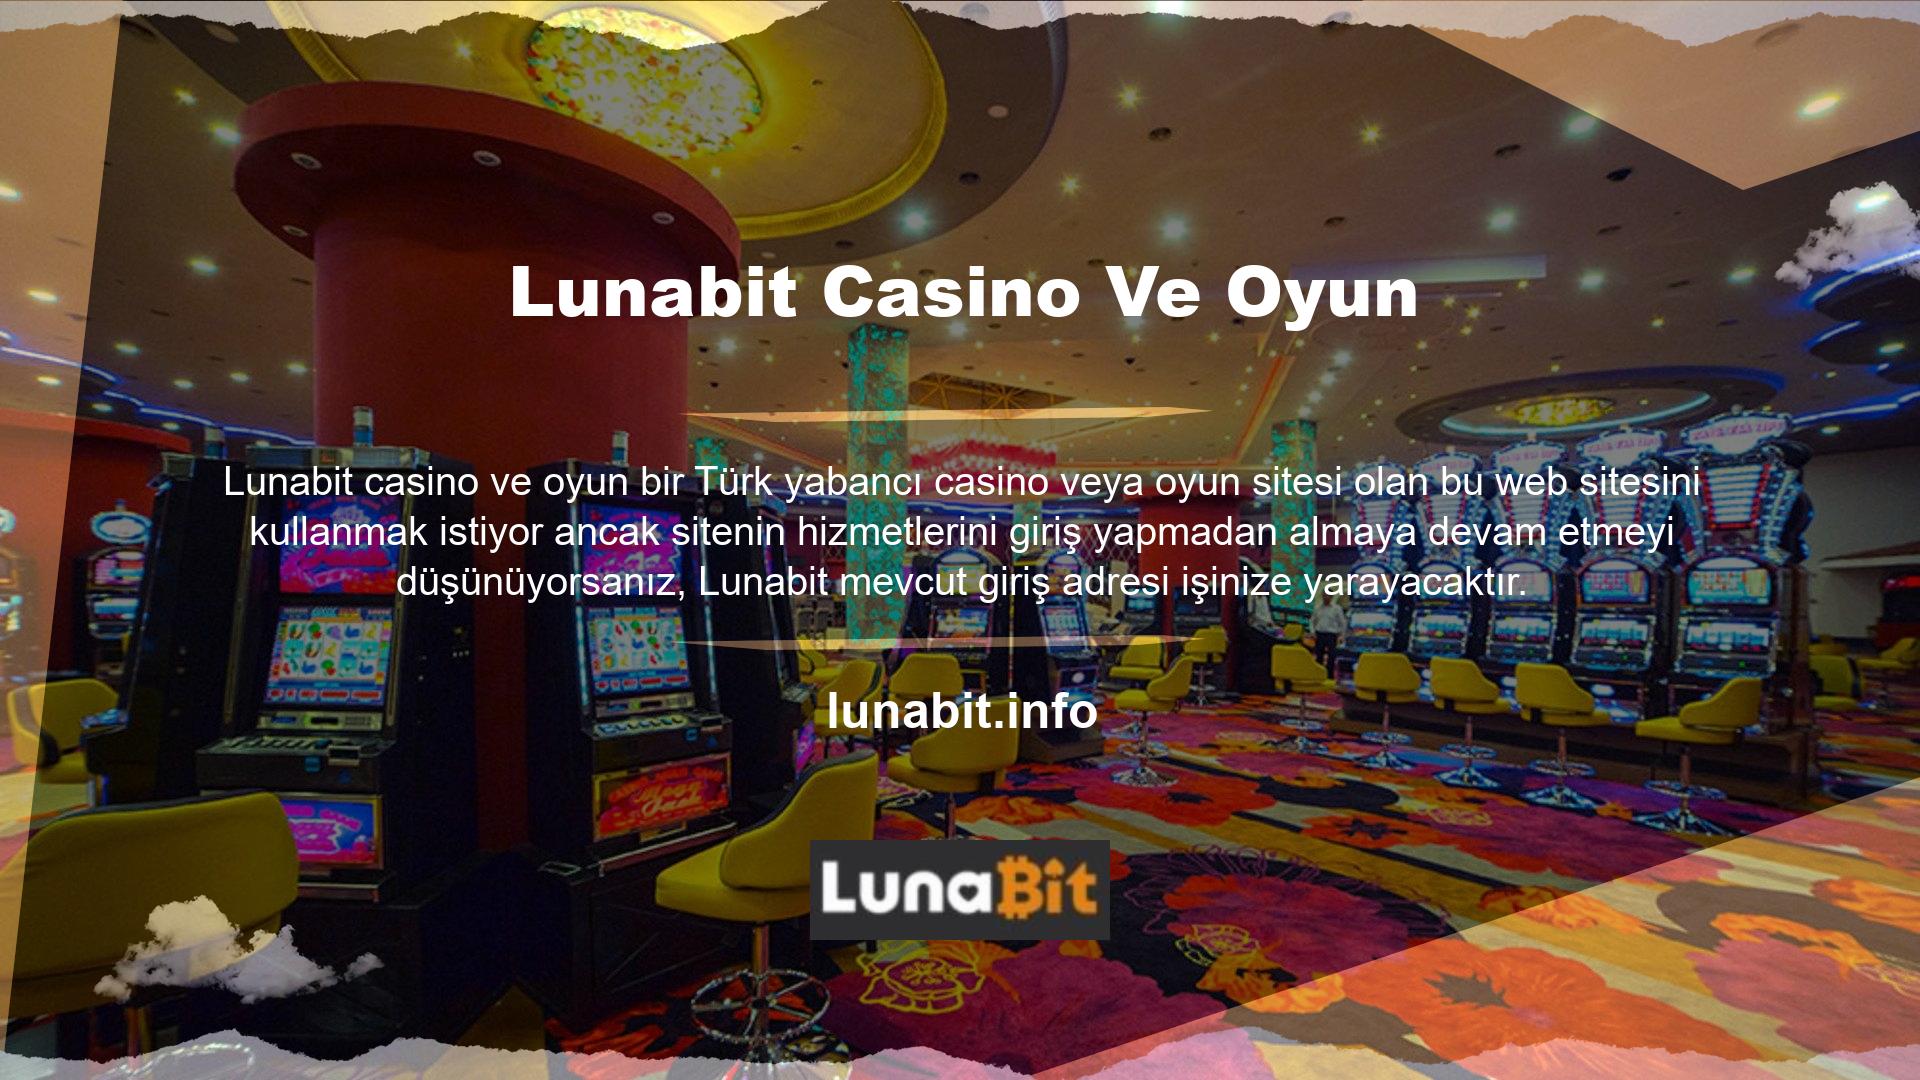 Tüm hizmetlerin yönetildiği bu siteyi ziyaret ettiğinizde güncel giriş adresiniz şirket aracılığıyla anında bahis ve casino piyasası kullanıcılarına iletilmektedir